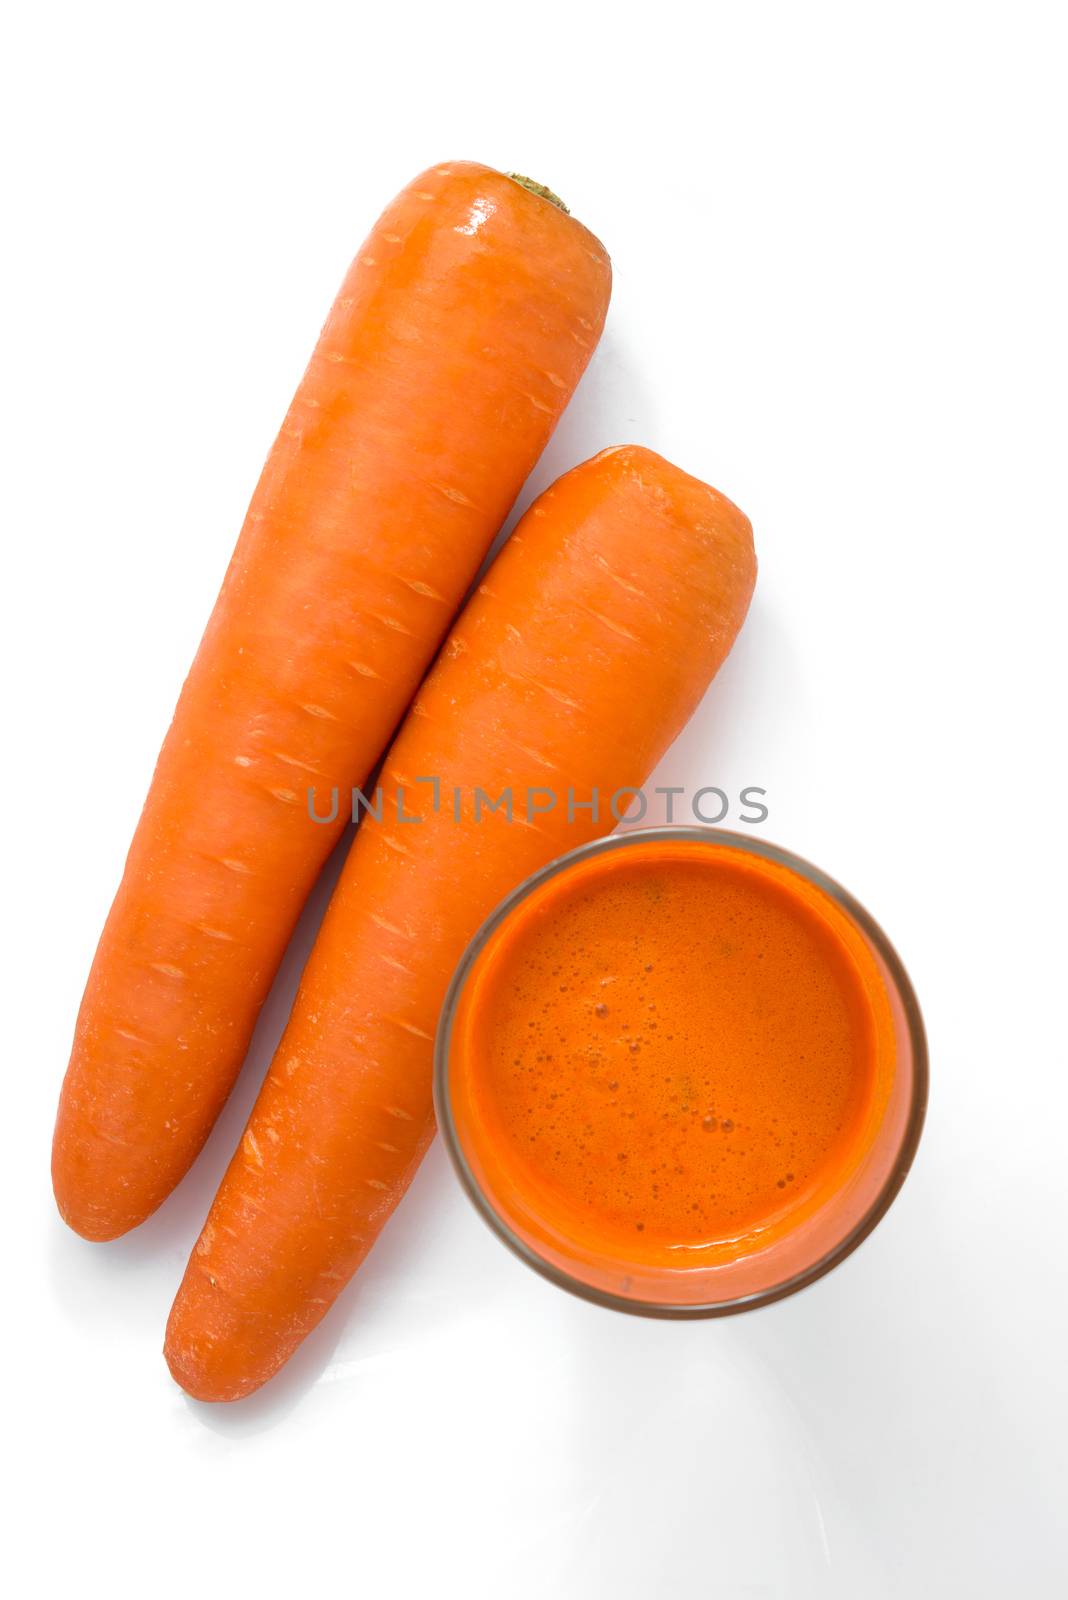 carrot juice by antpkr